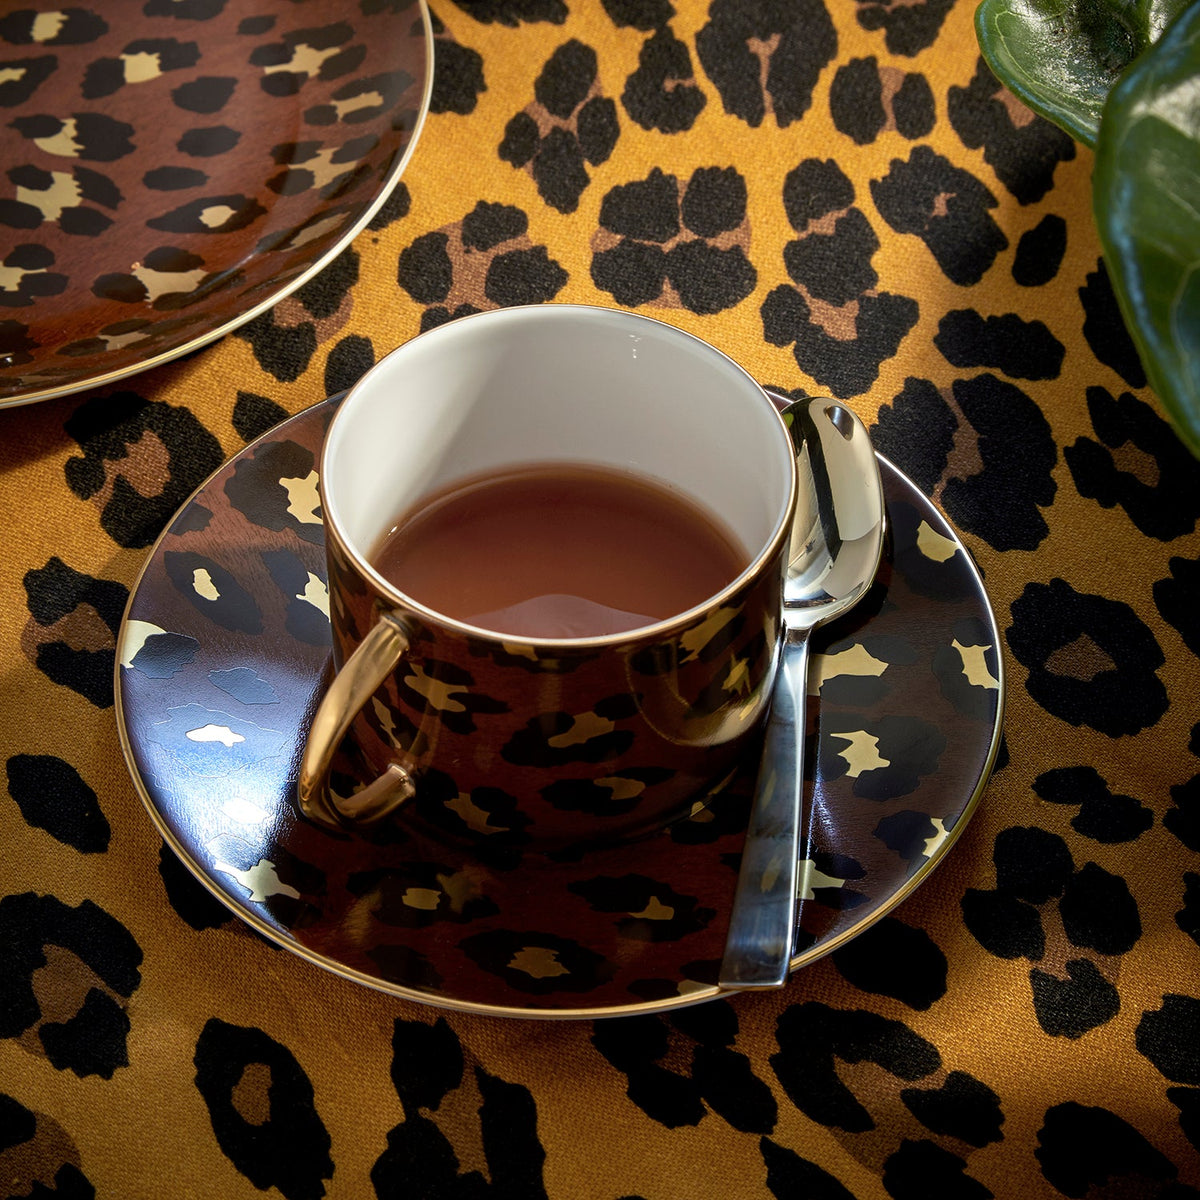 Leopard Tea Cup